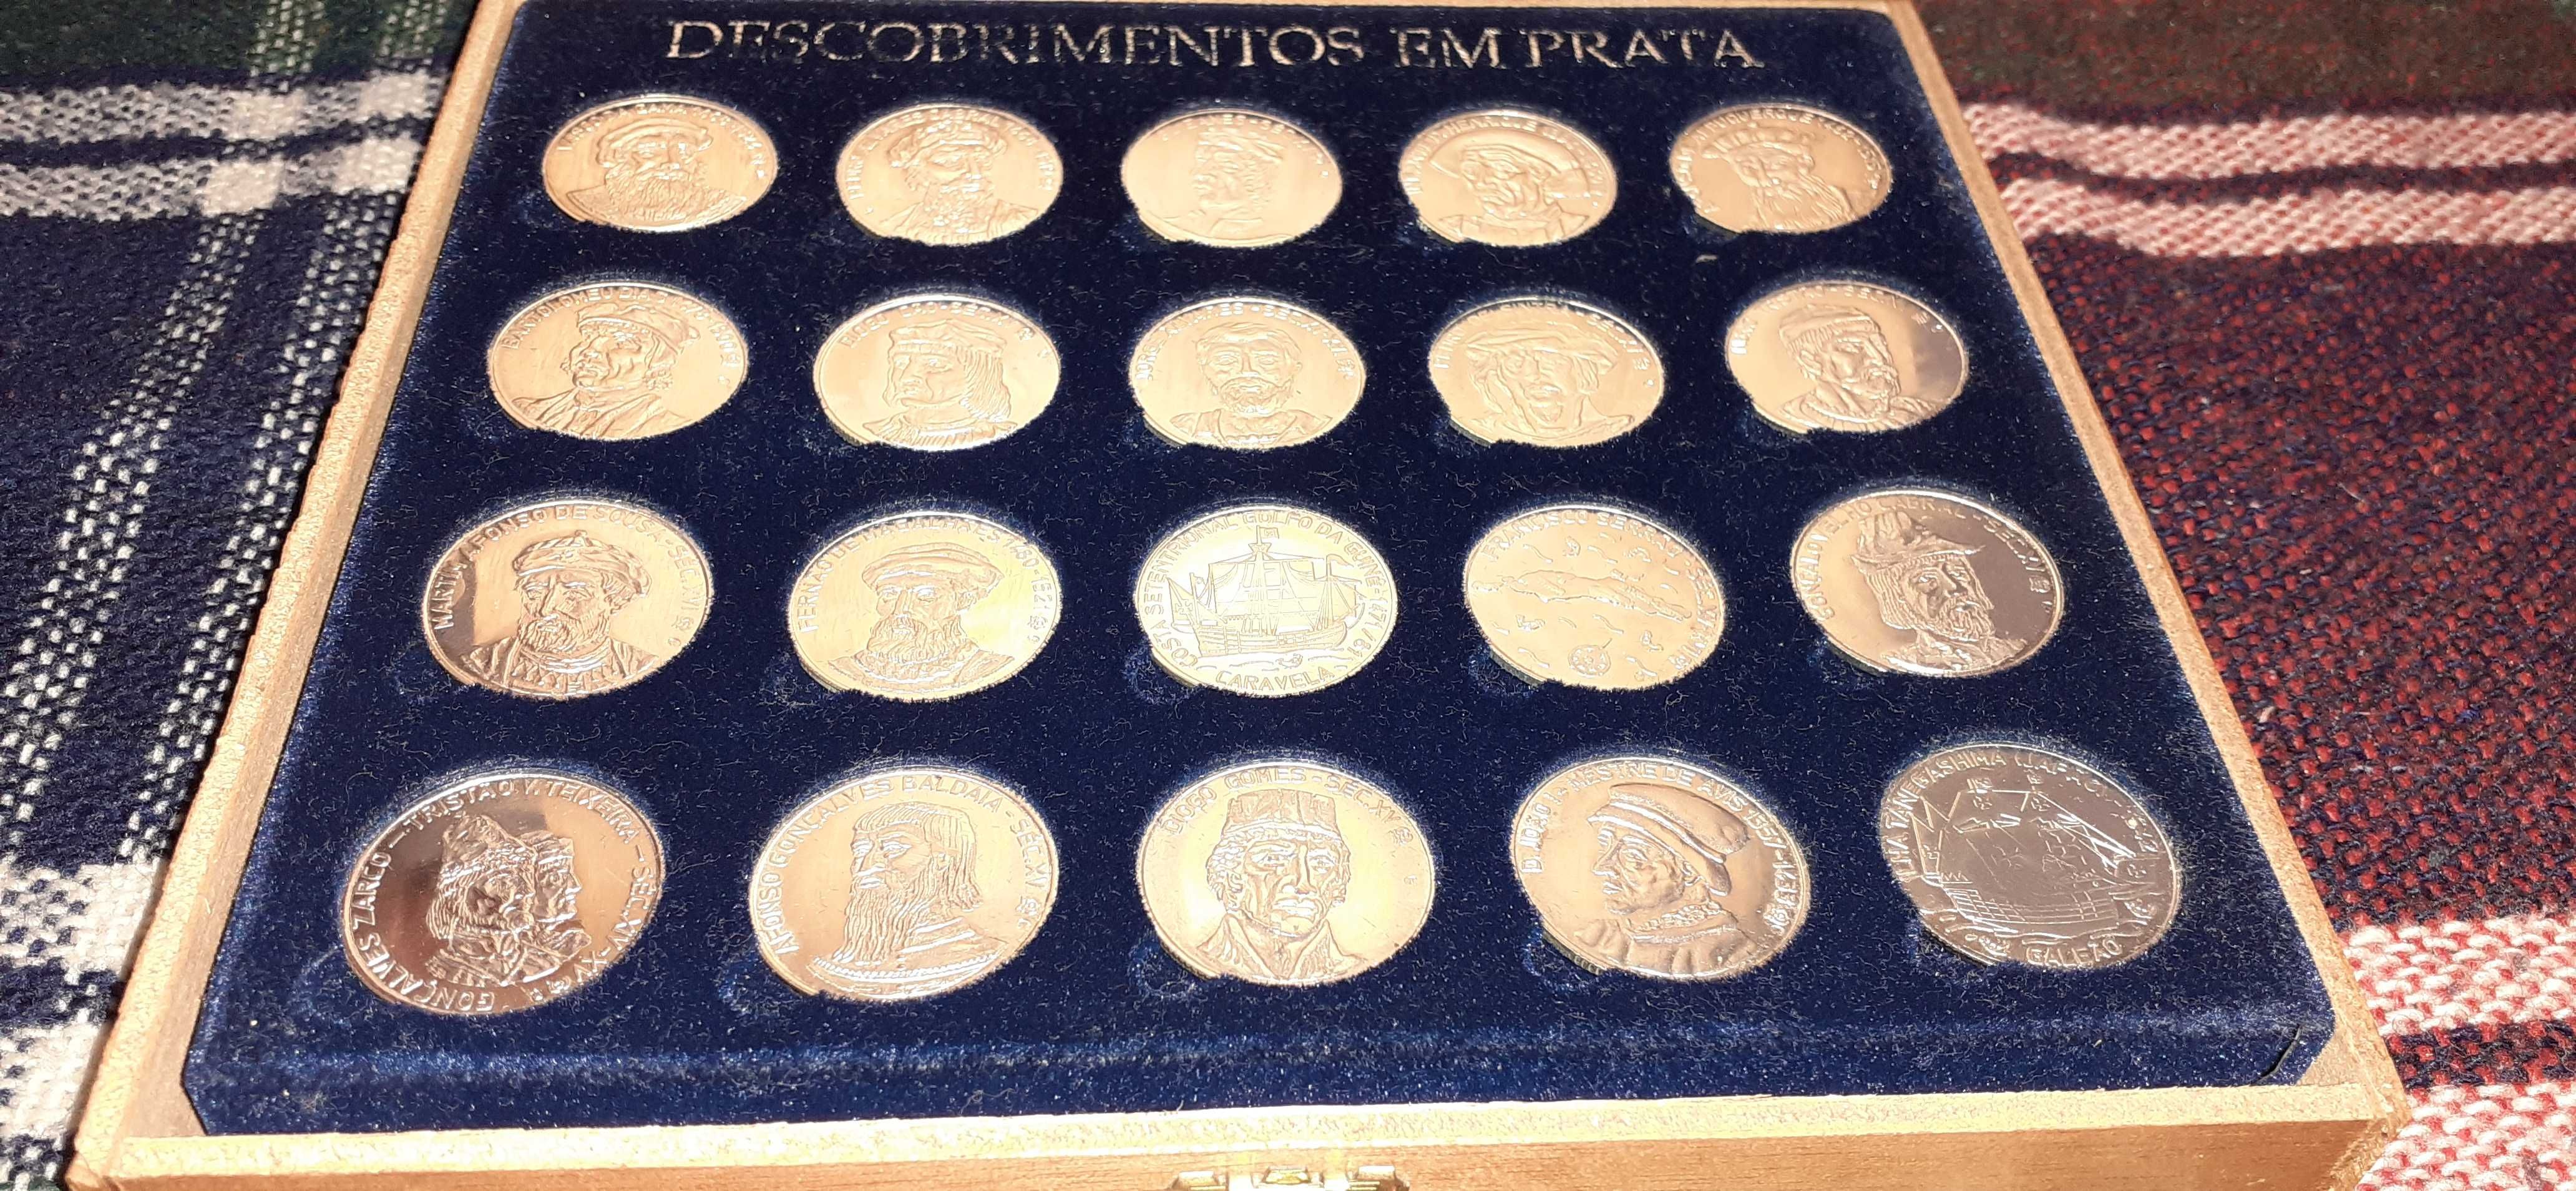 20 moedas descobrimento em prata